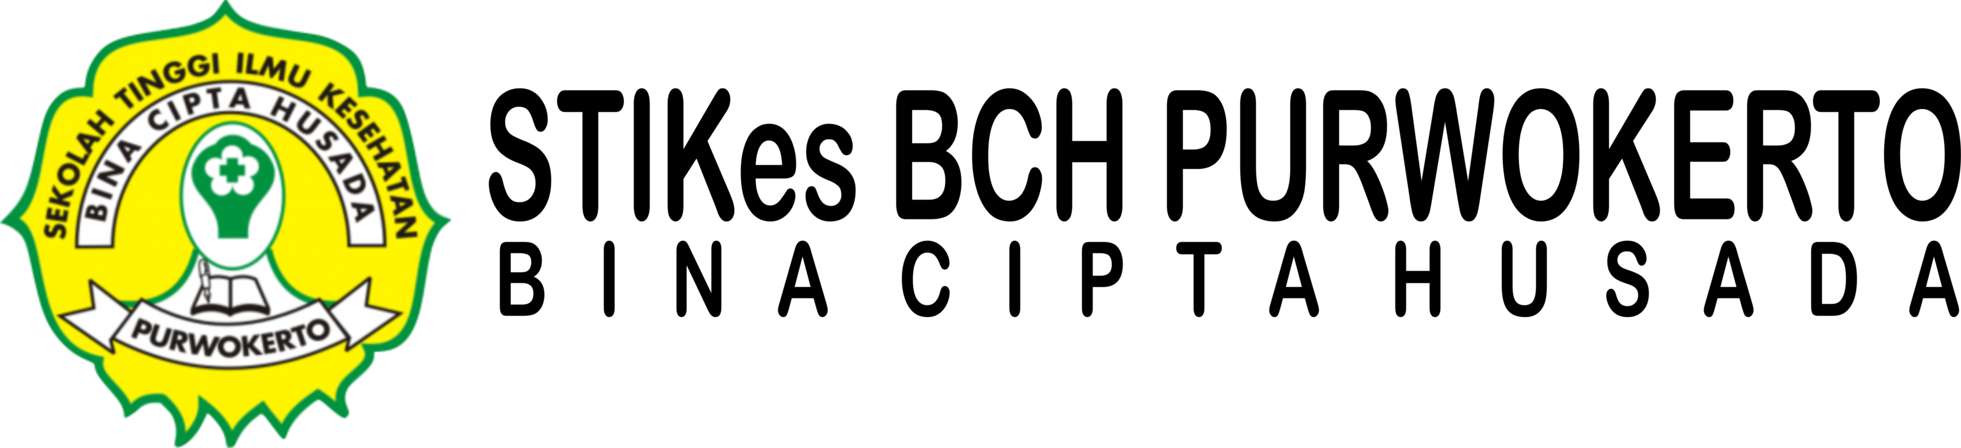 LogoBCH